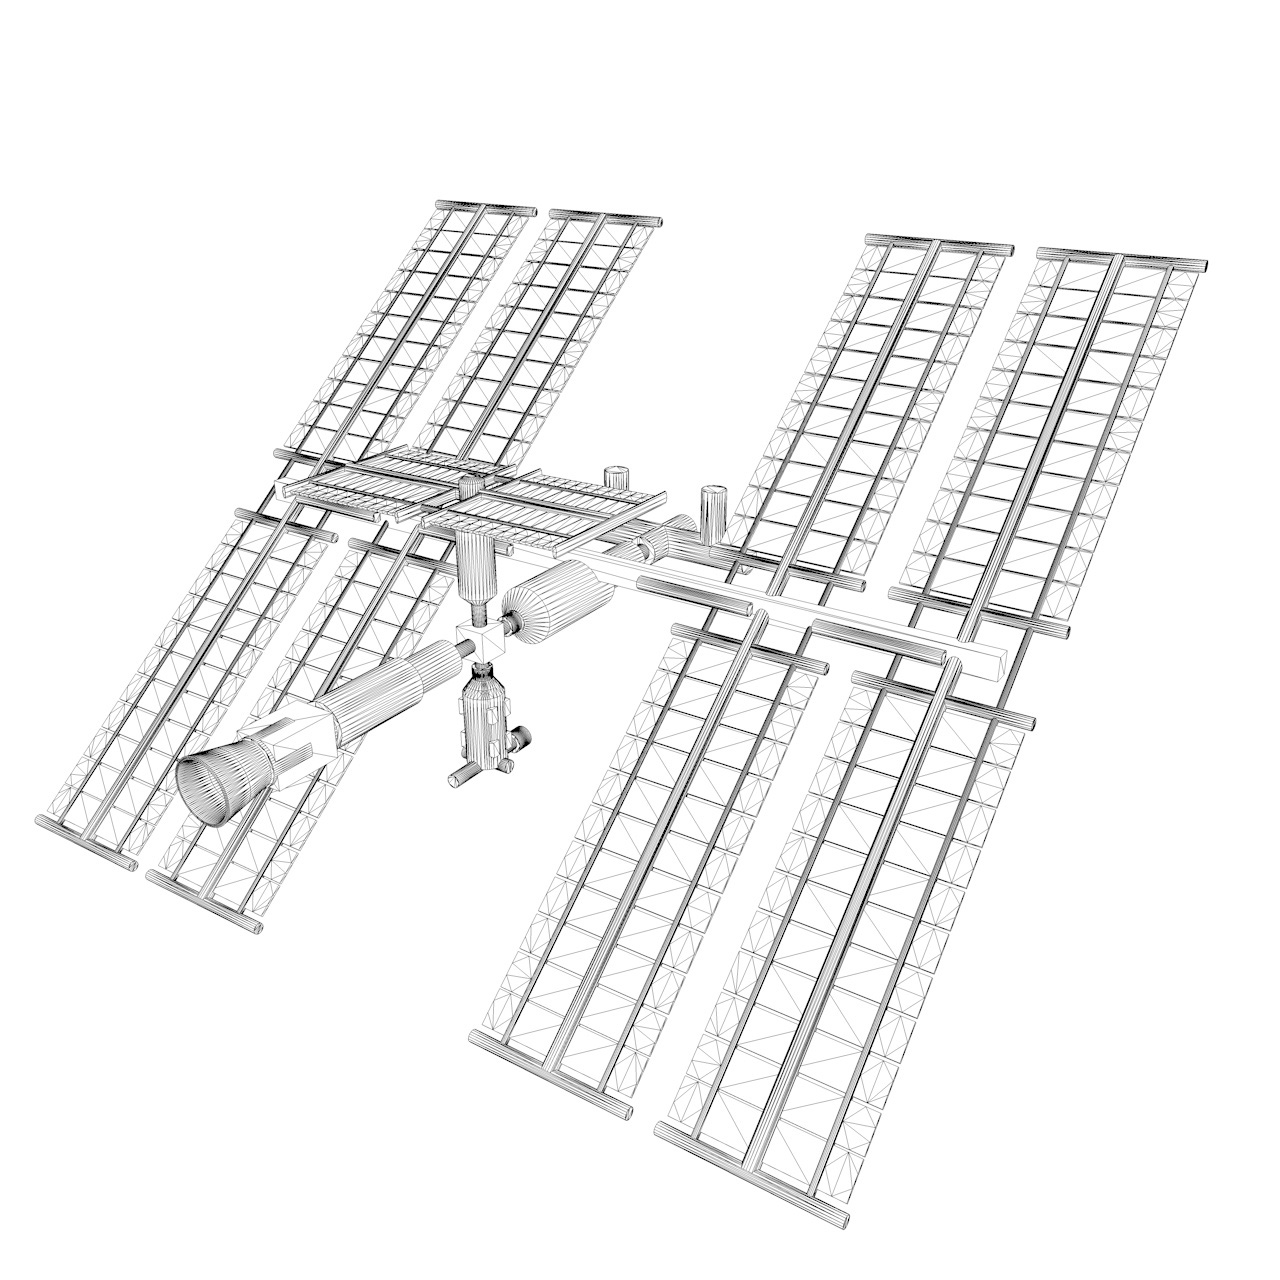 Modelo 3d de la estación espacial